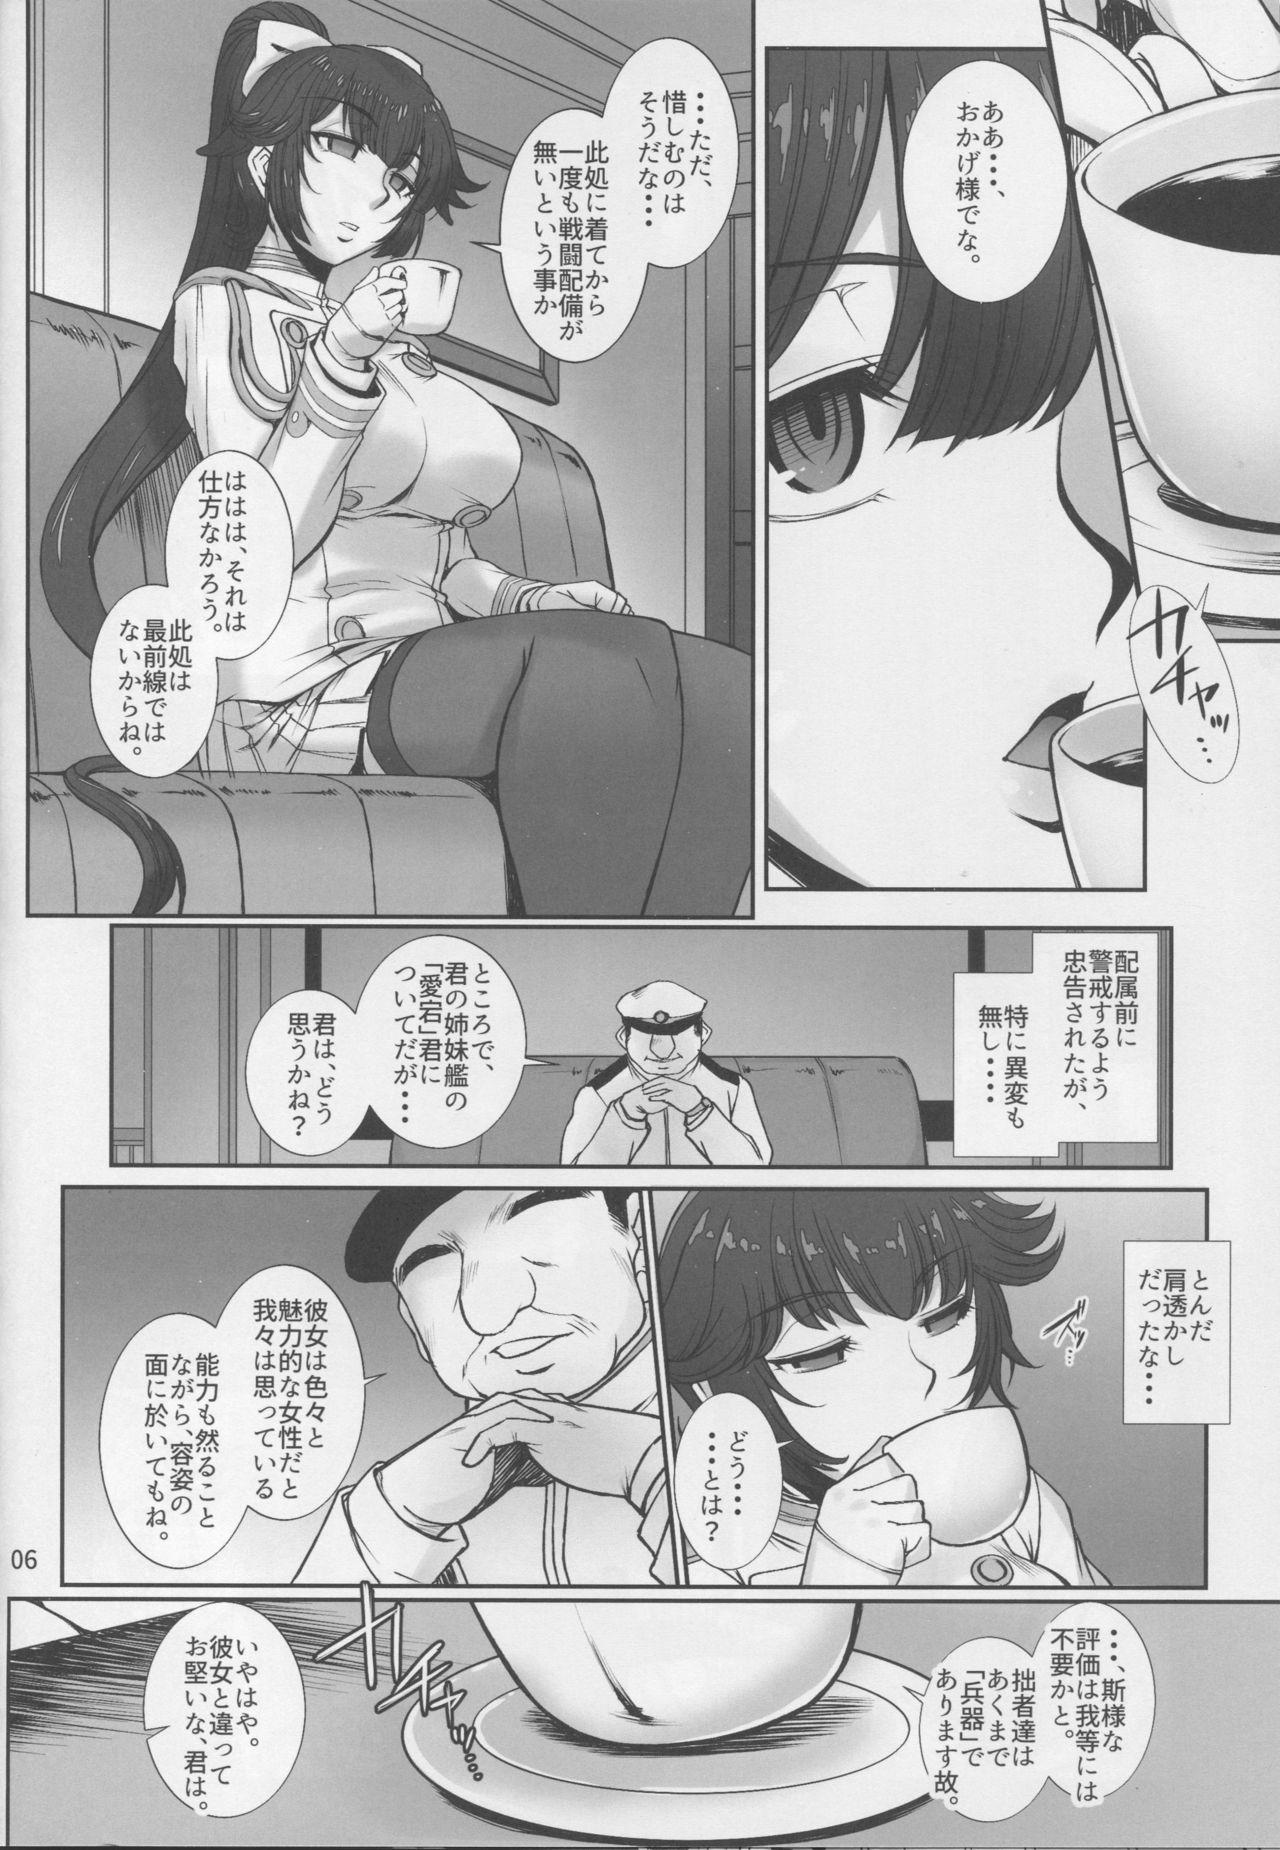 Masturbandose Takao wa Midara ni Musebinaku - Azur lane Slut Porn - Page 5